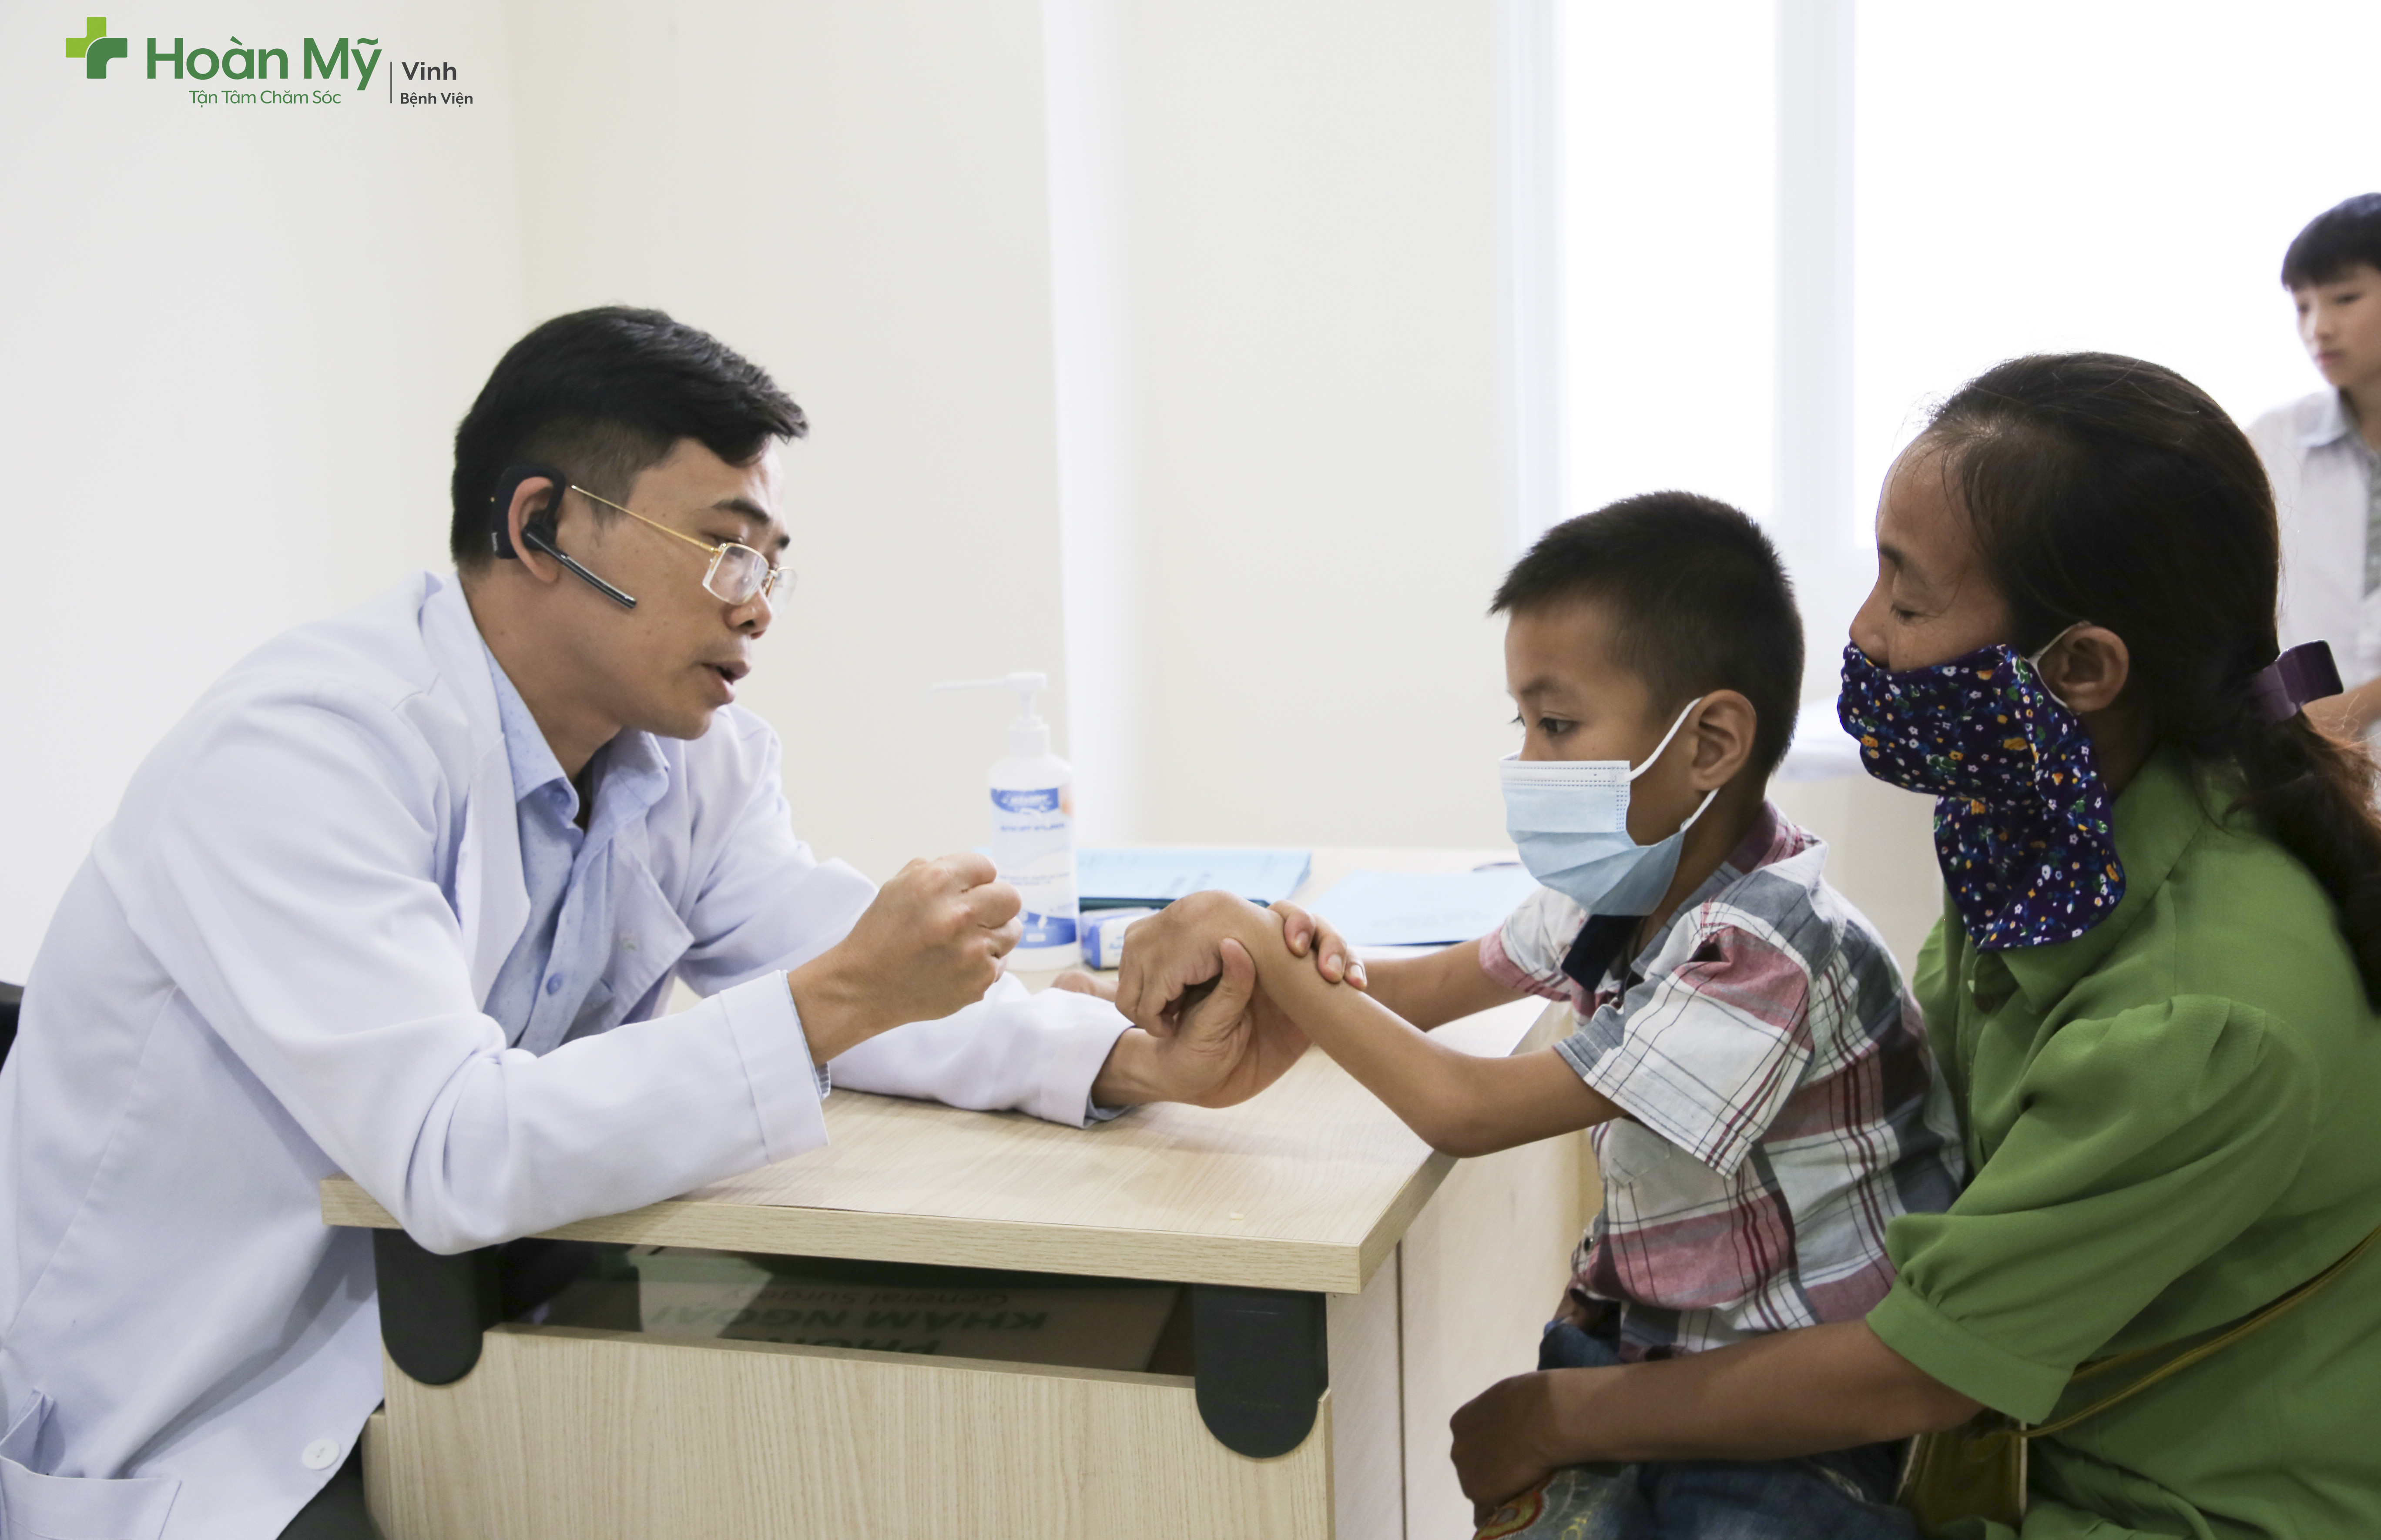 Bác sĩ Bệnh viện Quốc tế Vinh khám sàng lọc cho trẻ và tư vấn về phương pháp điều trị. Ảnh: Kim Chung